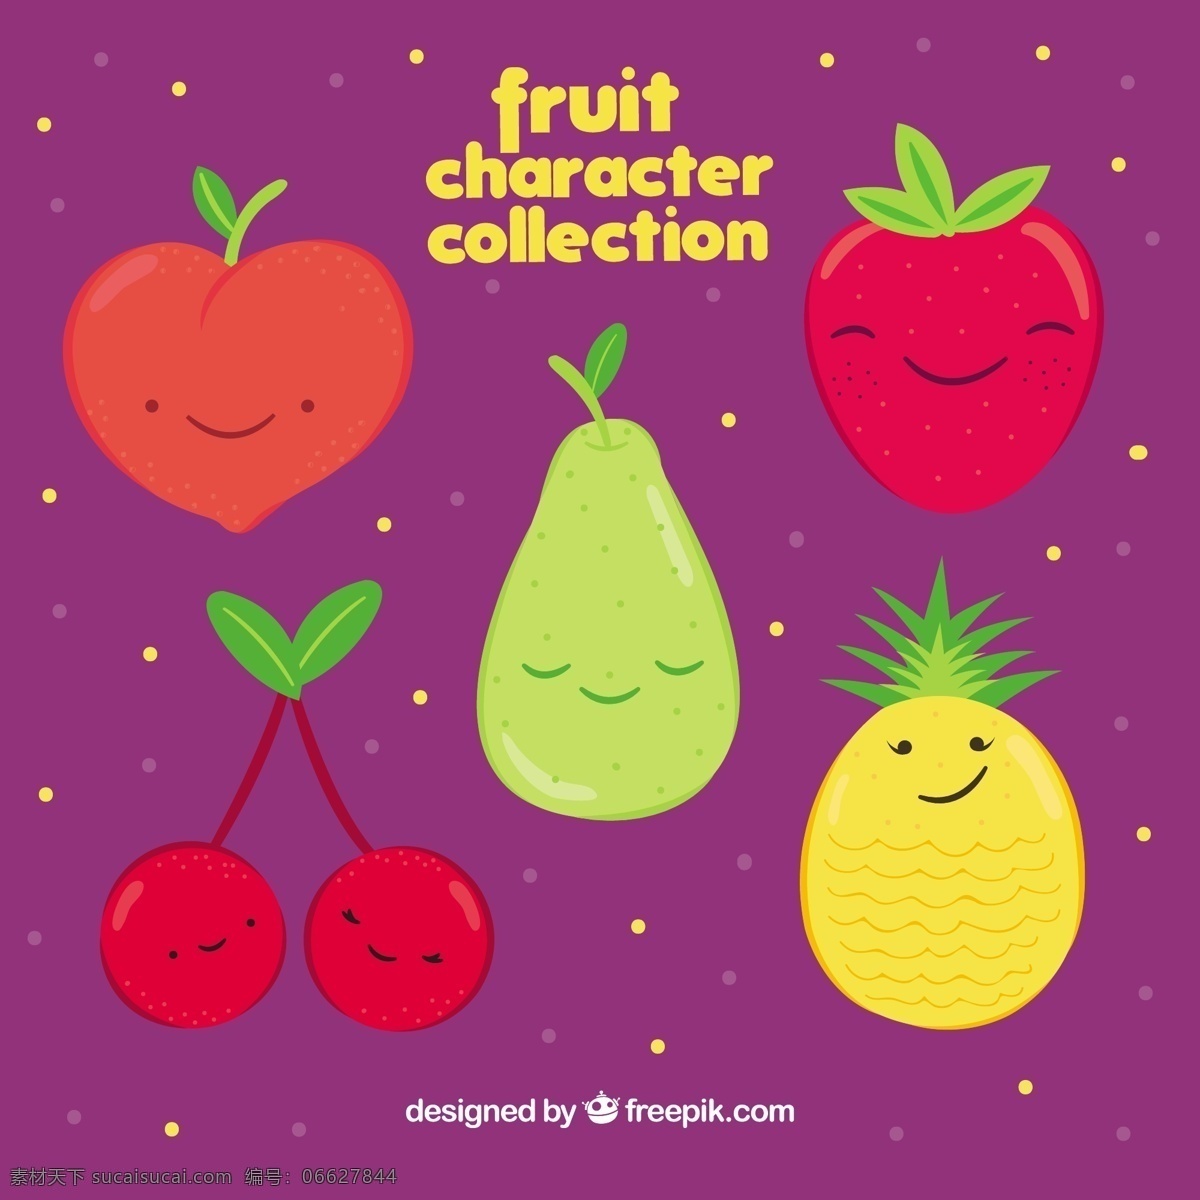 含笑 果 性状 选择 食物 夏天 水果 颜色 快乐 热带 自然 健康 草莓 有趣 菠萝 健康食品 营养 樱桃 人物 桃 美味 梨